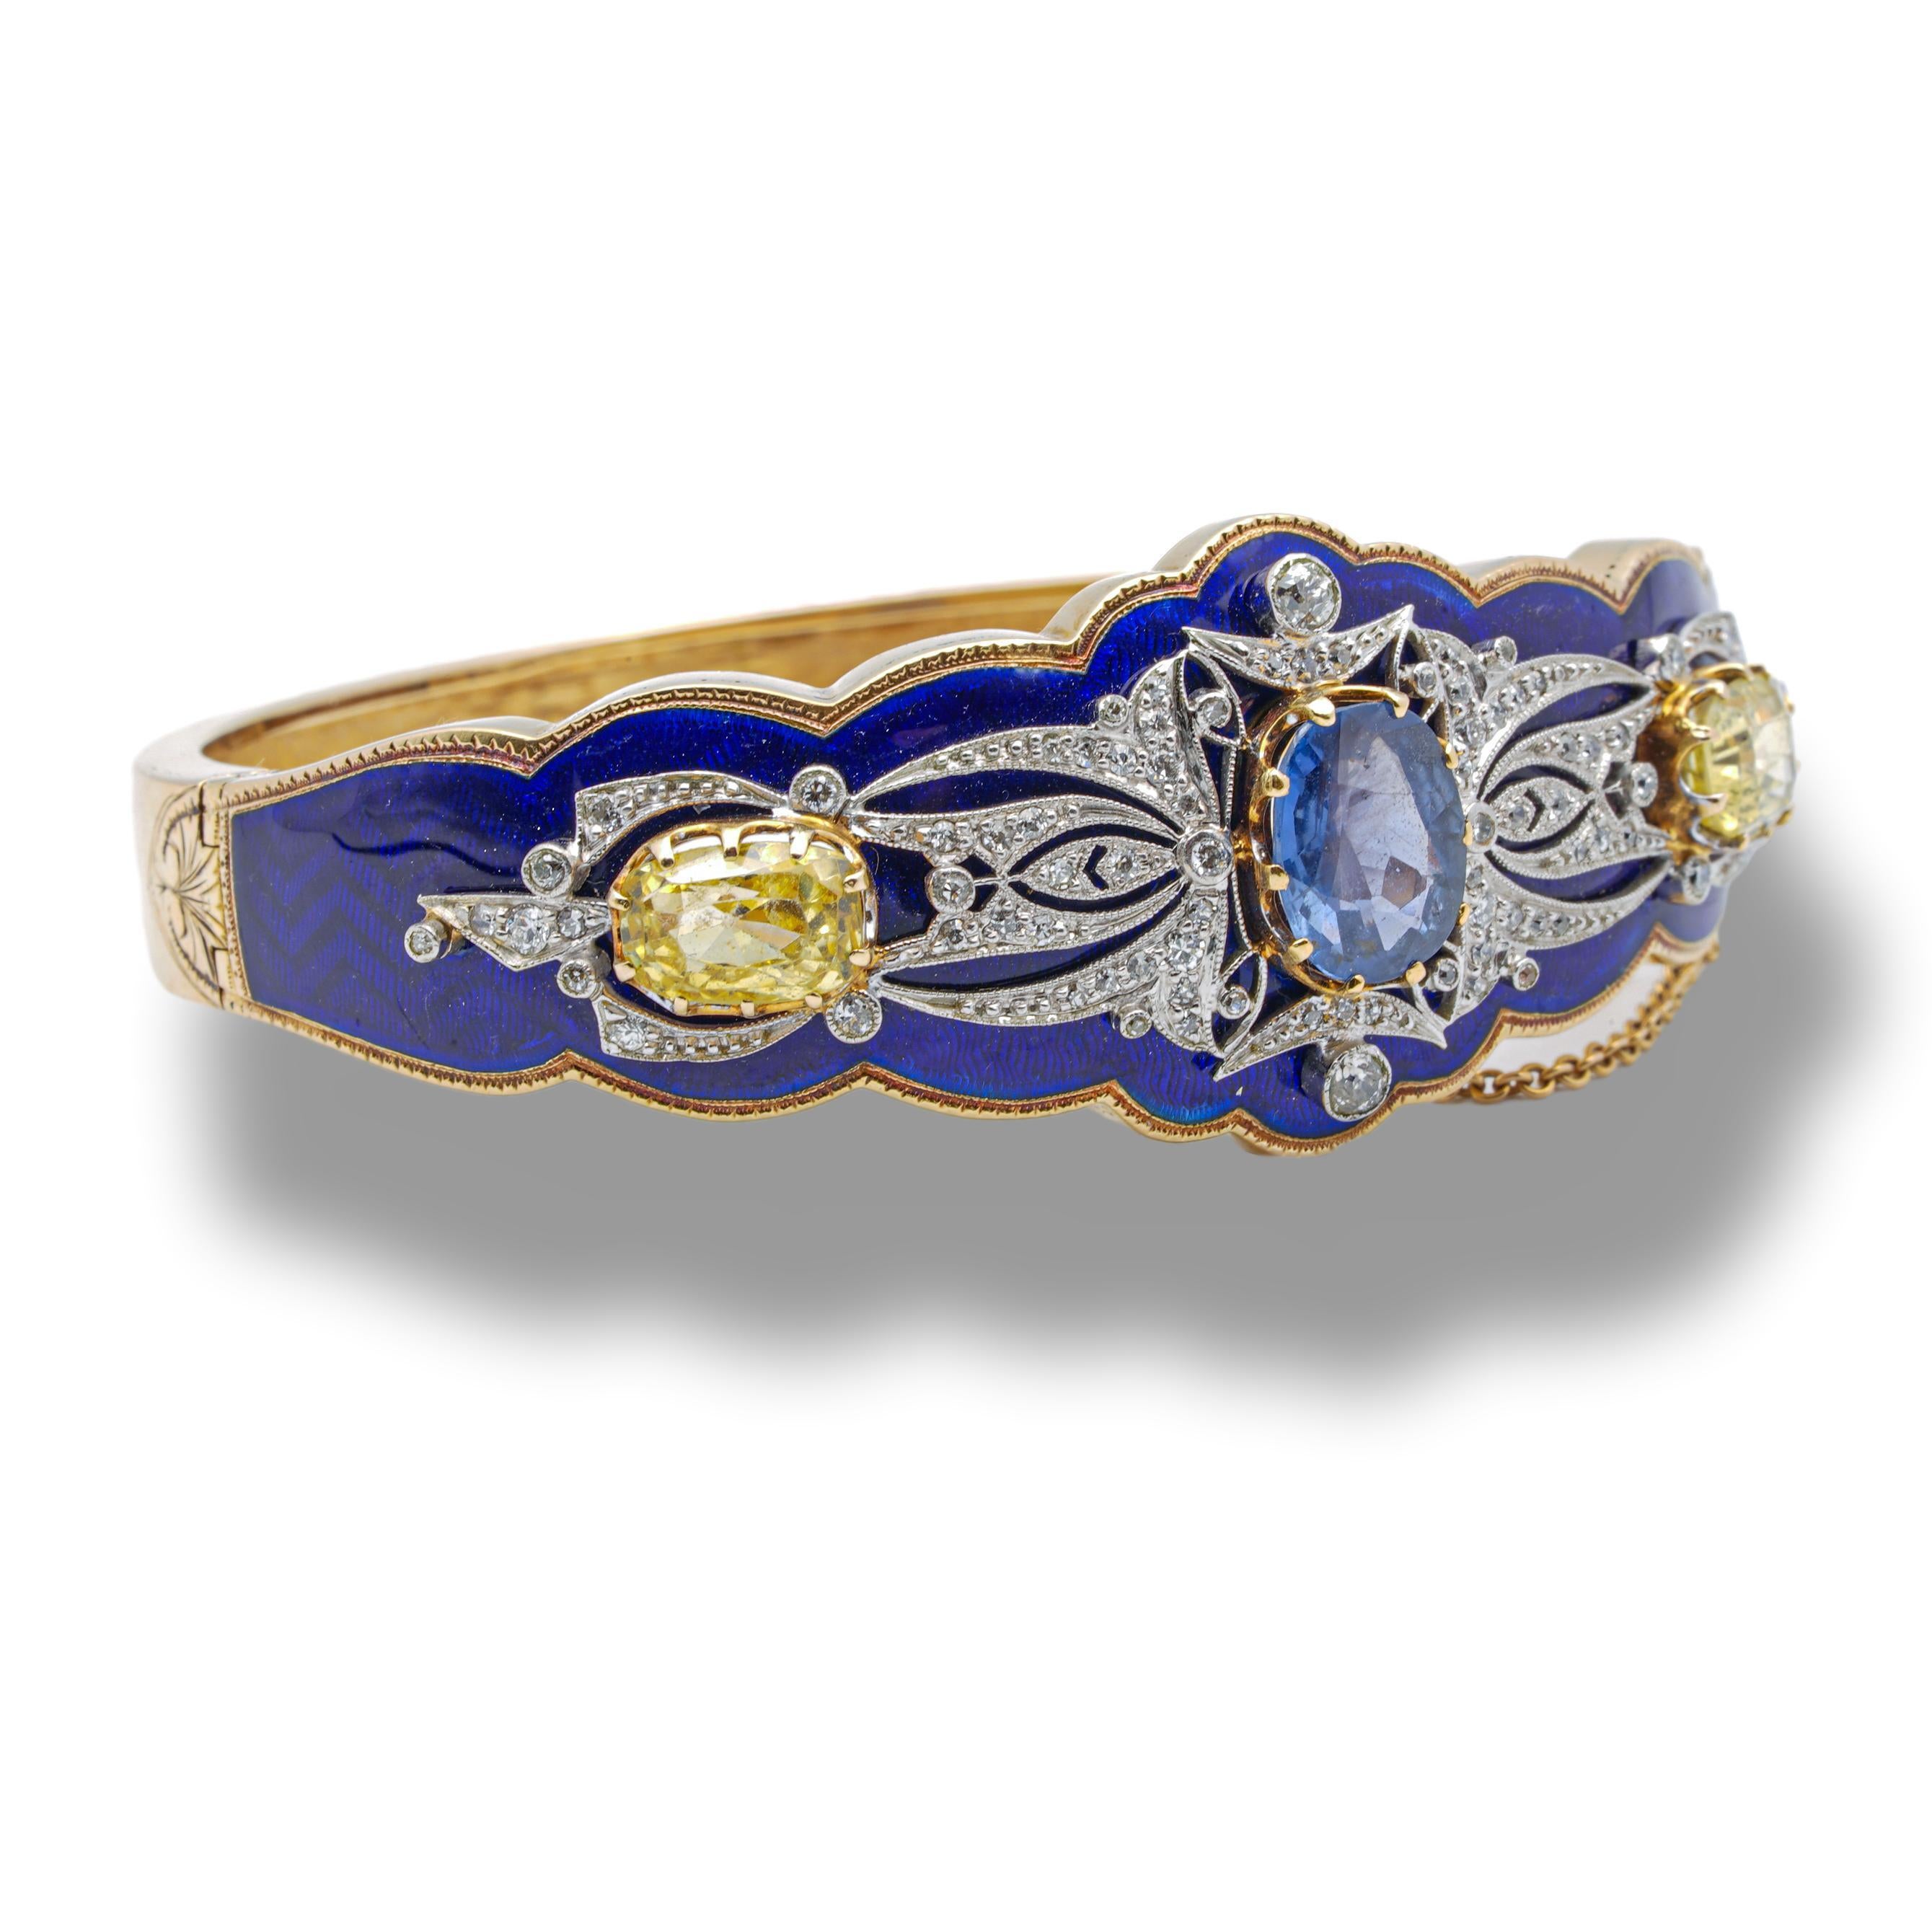 Bracelet vintage finement réalisé en or 14 carats avec une finition exquise en émail bleu royal et un mélange de saphirs bleus et jaunes. Un saphir bleu ovale central pèse 3,48 cts et est certifié par AGL (American Gemological Laboratories) comme un